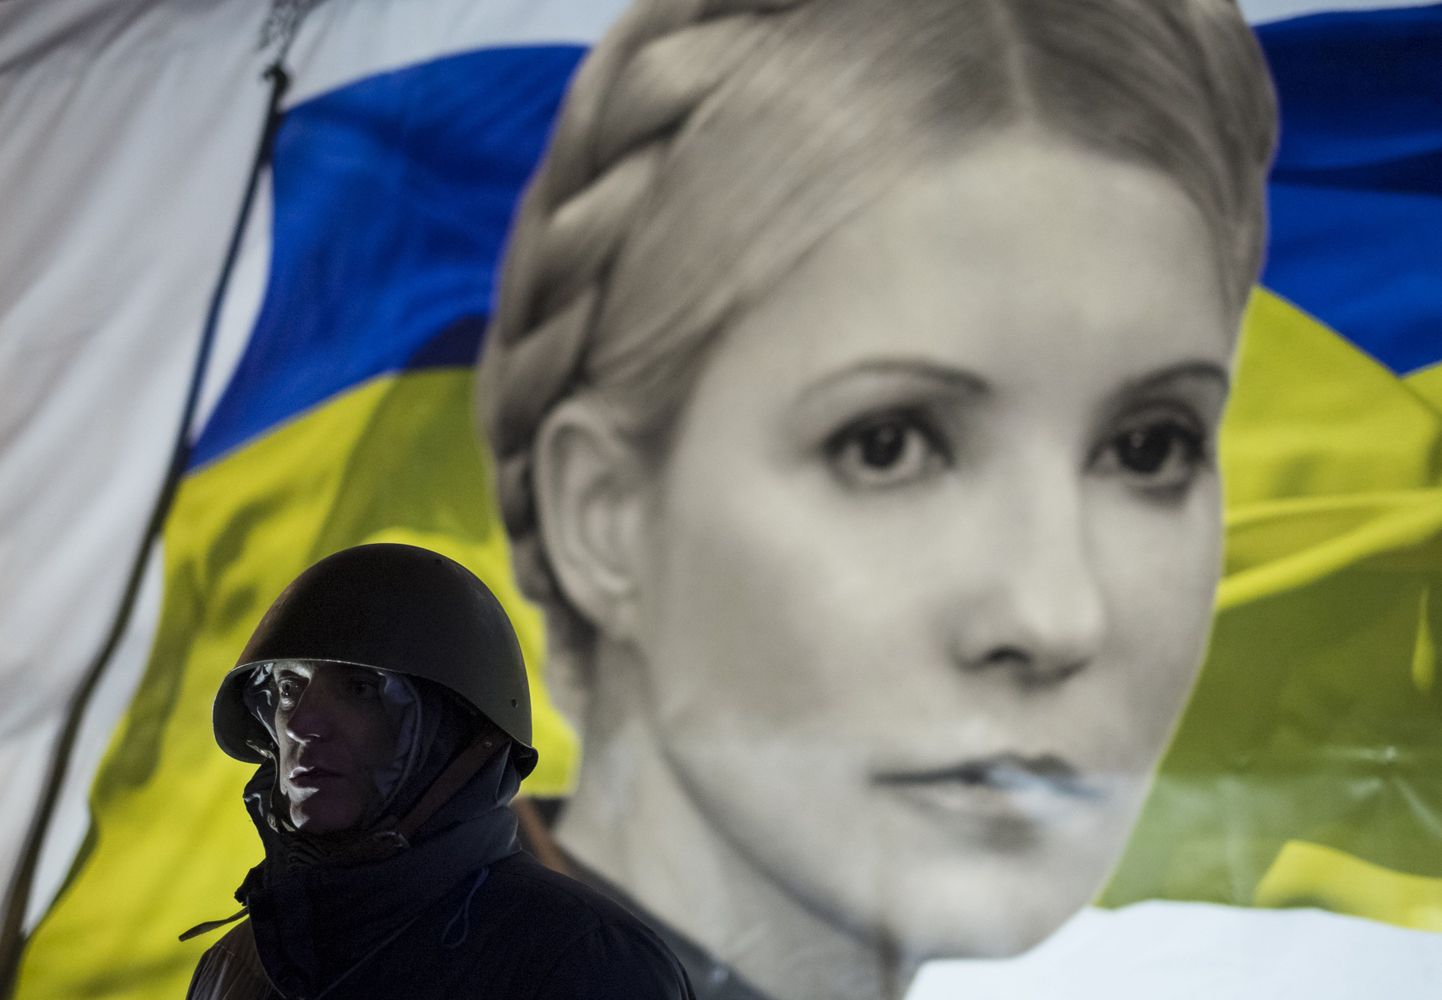 Kiievi protestija Ukraina lipu ja Julia Tõmošenko pildiga